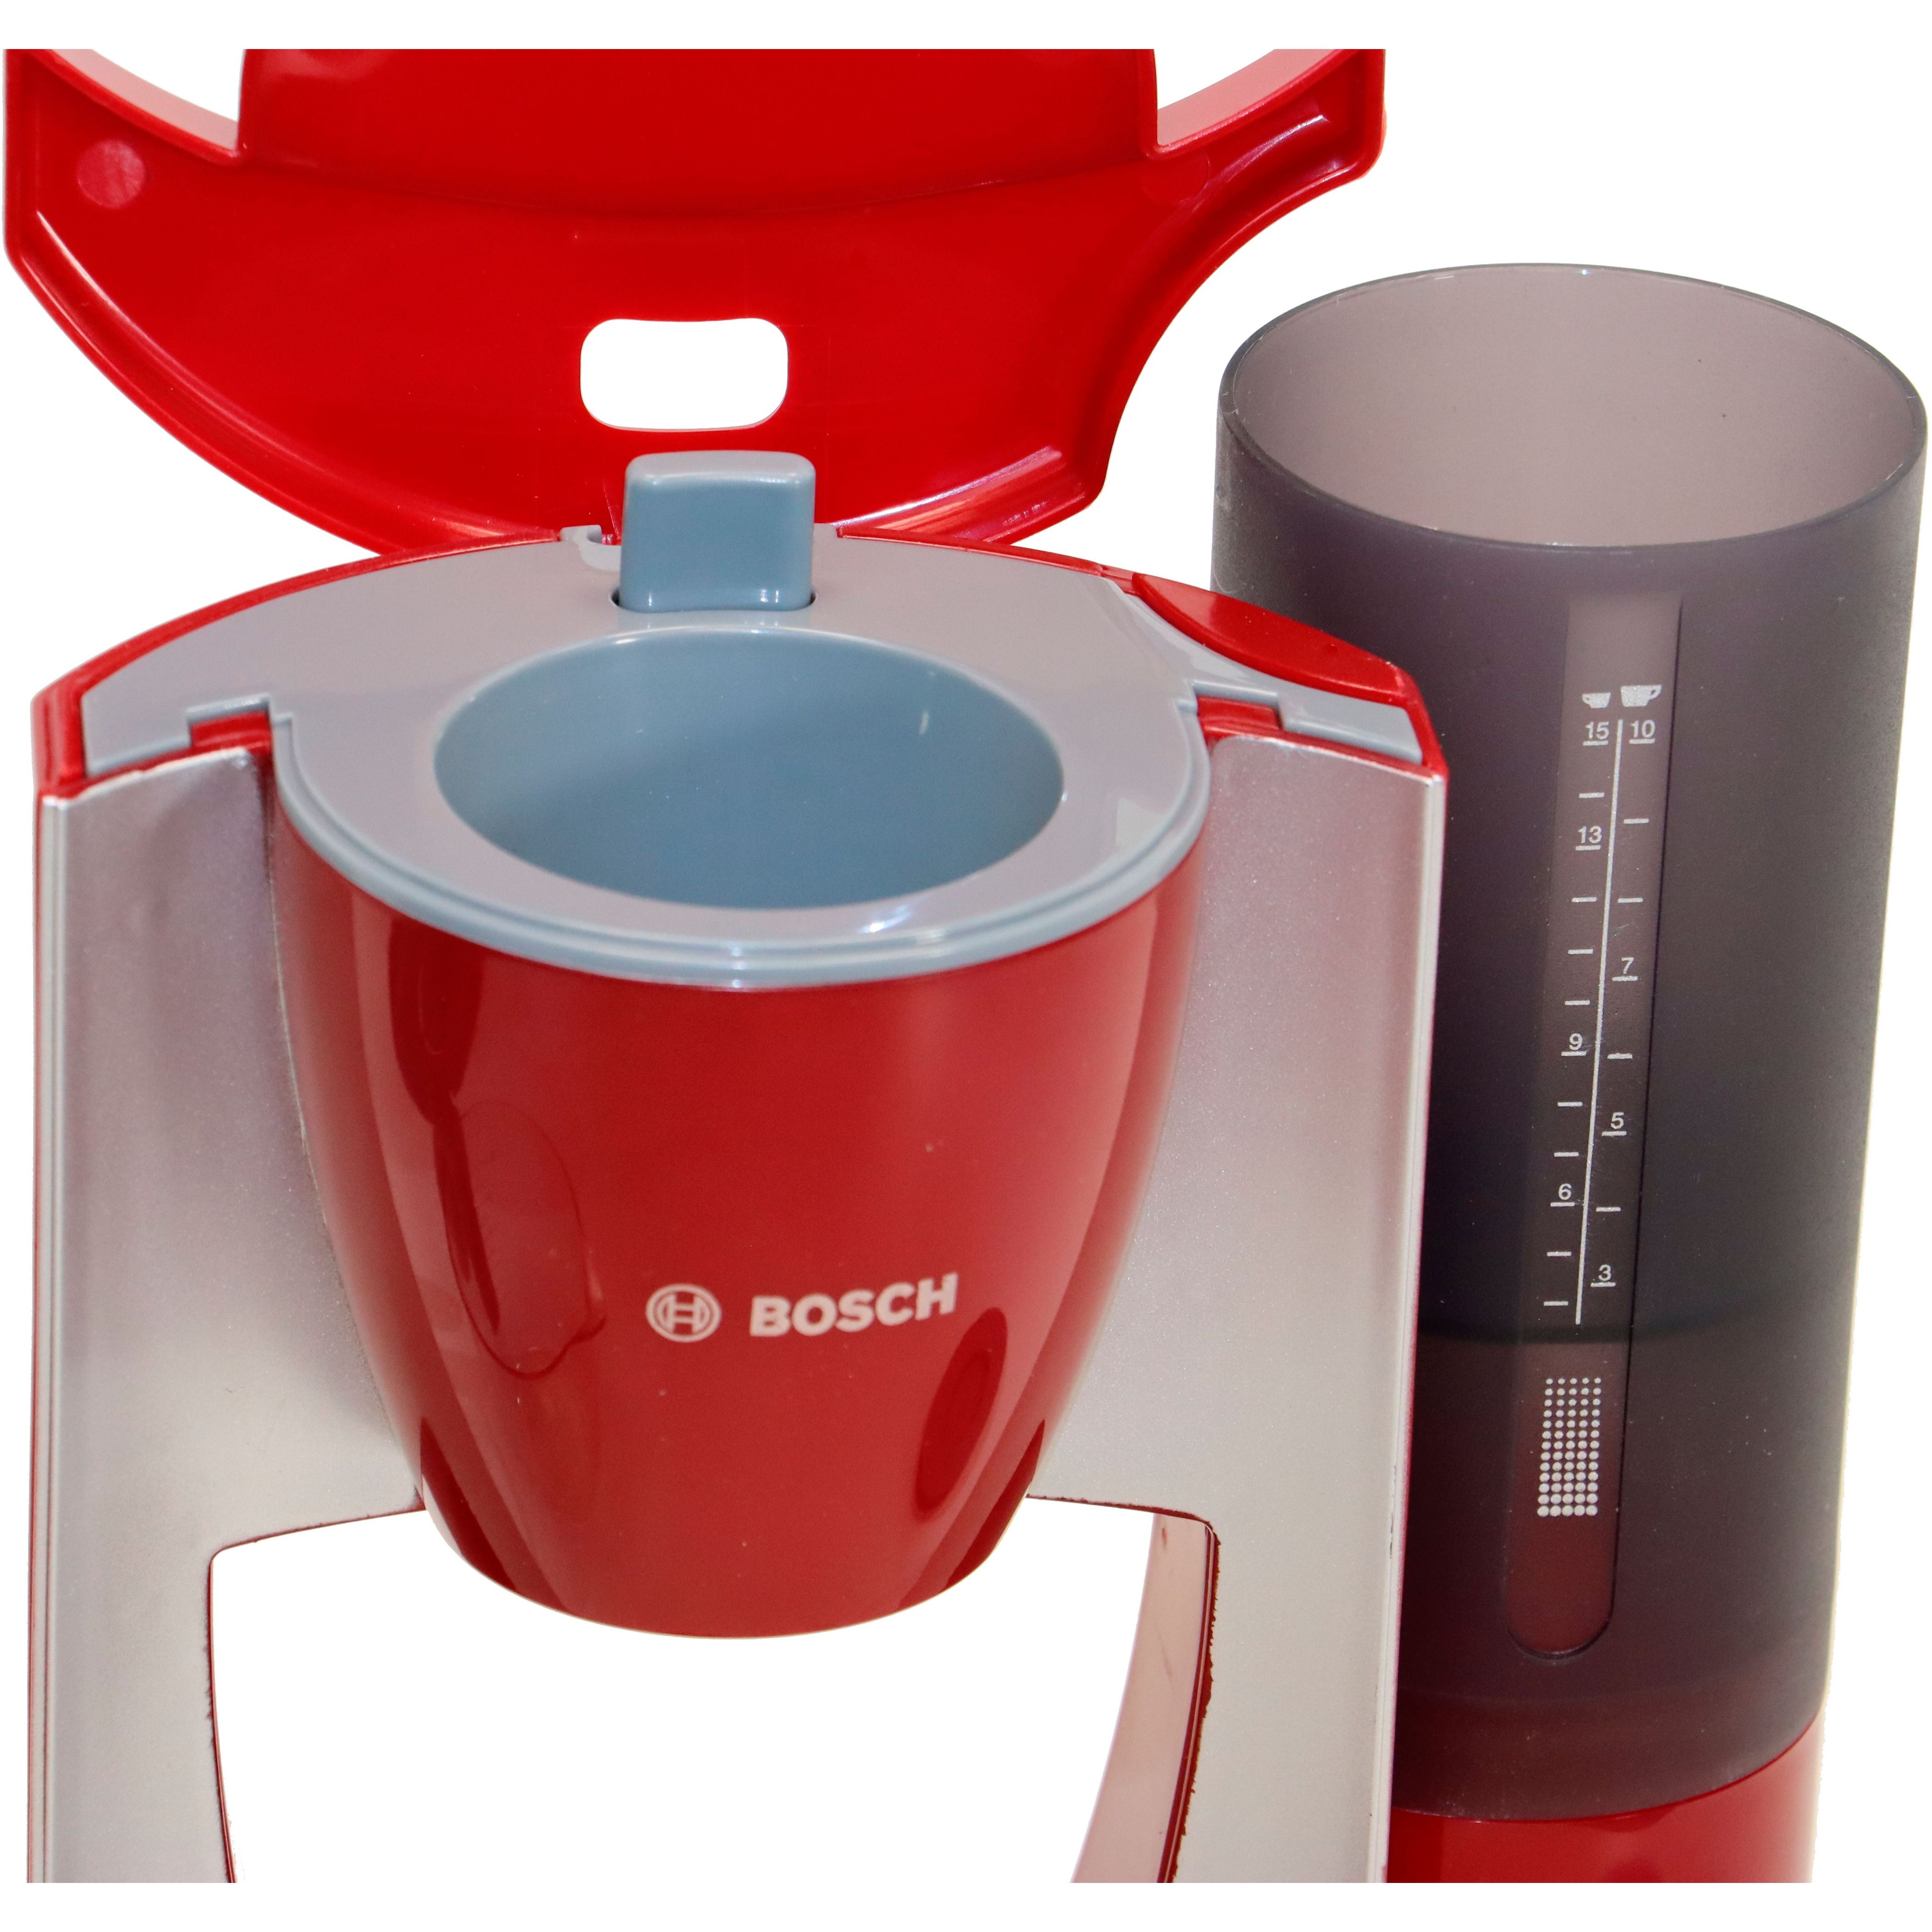 Игрушечный набор Bosch Mini кофеварка с резервуаром для воды (9577) - фото 4